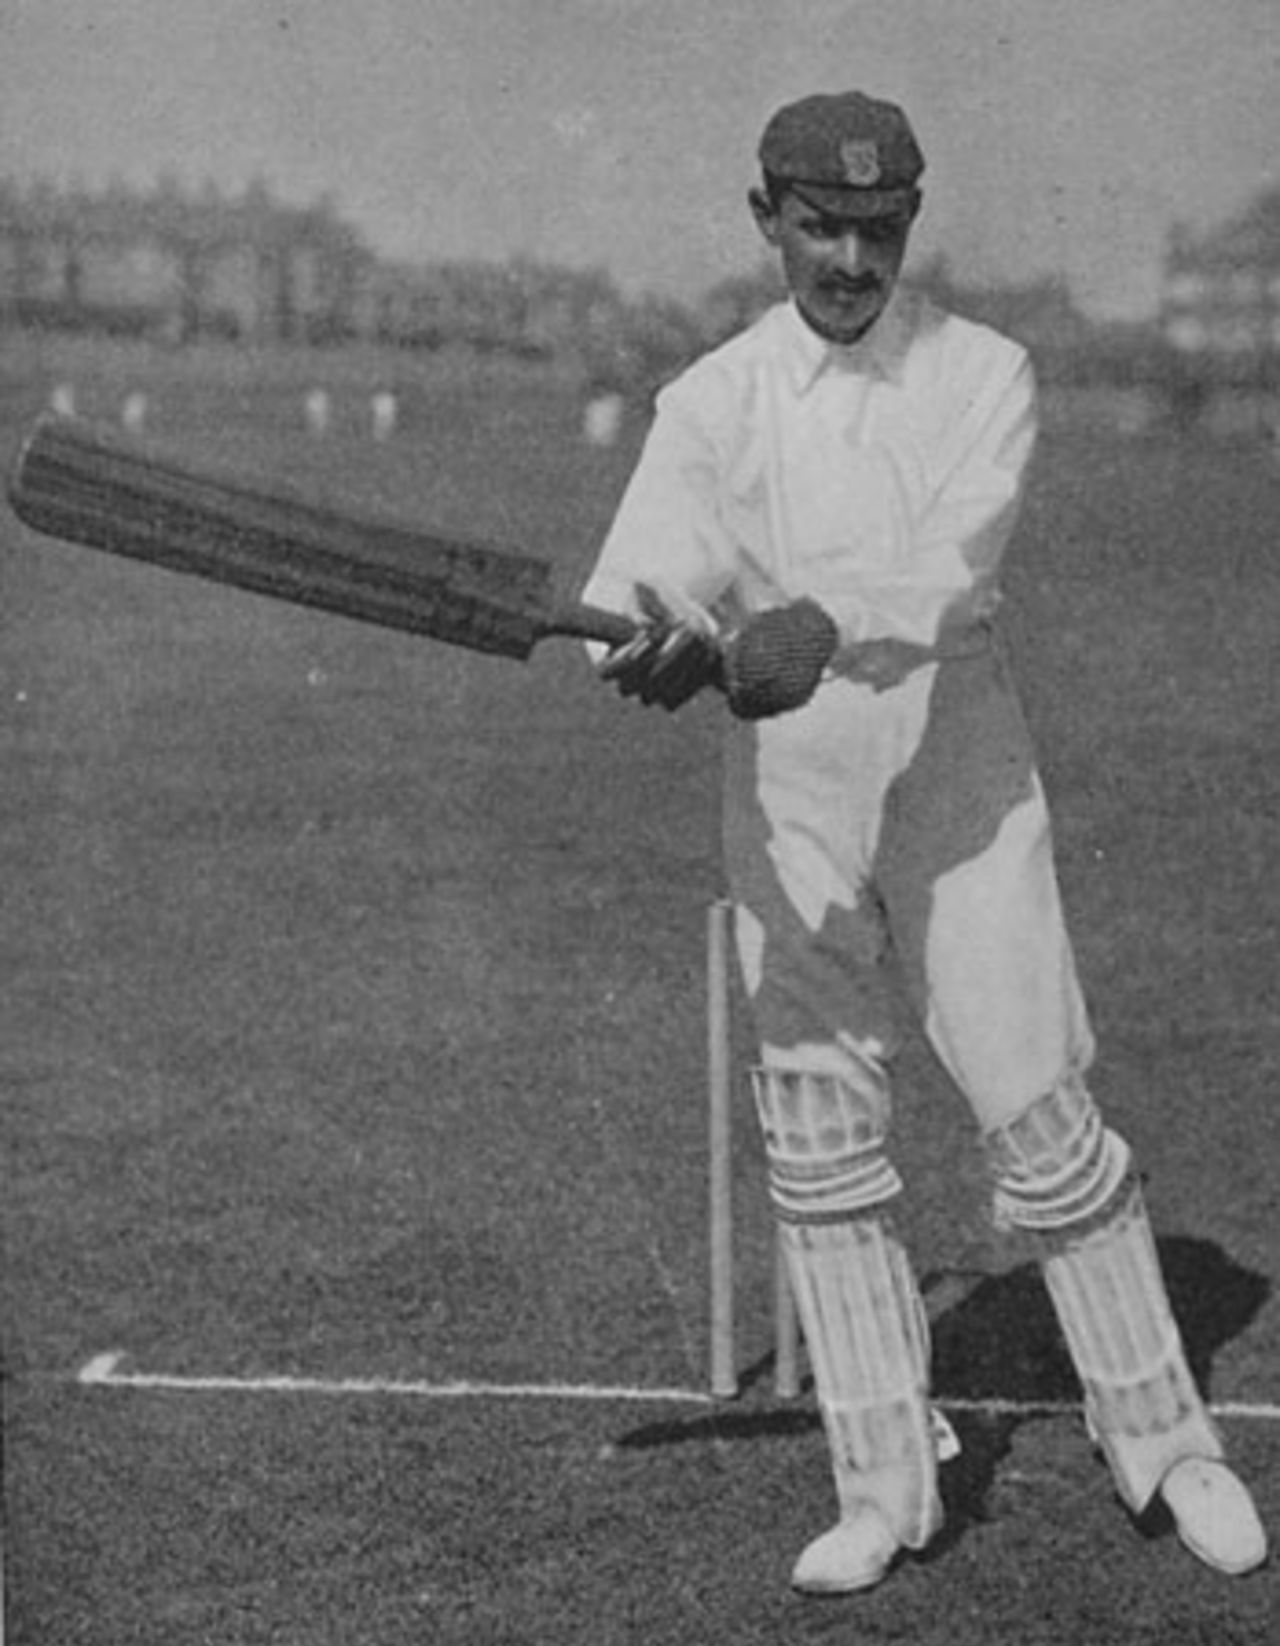 Ranjitsinhji demonstrates a shot in his <I>Jubilee Book of Cricket</I>, 1897